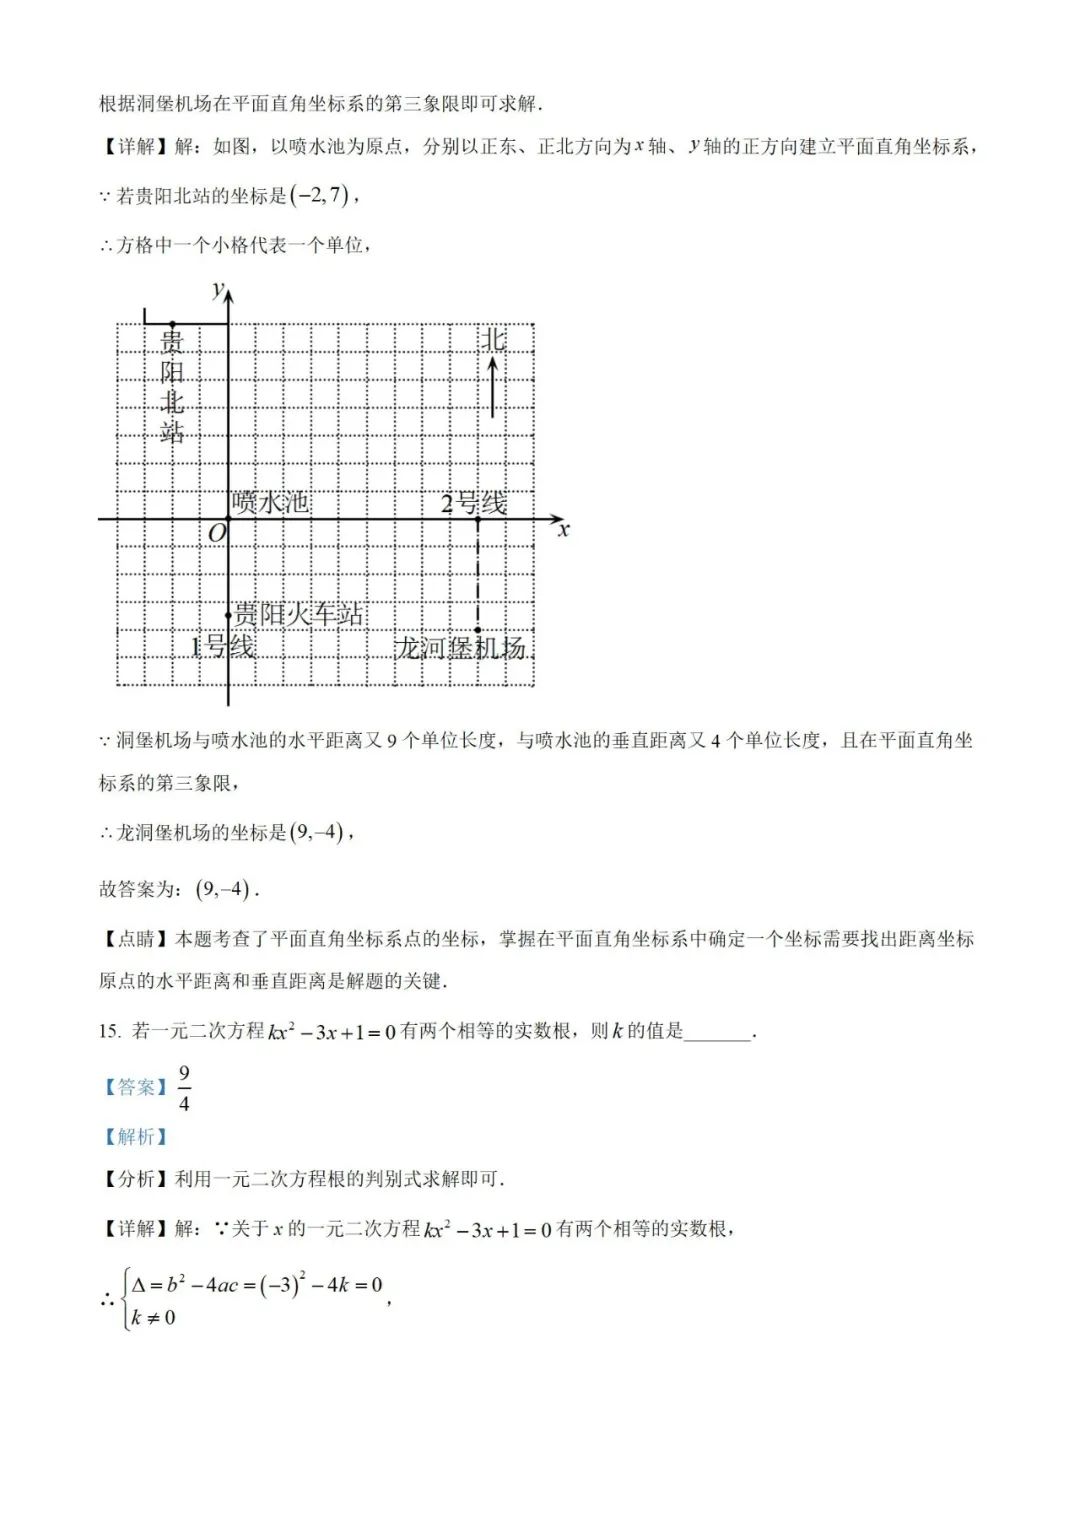 【中考真题】2023年贵州省中考数学真题 (带答案解析) 第16张